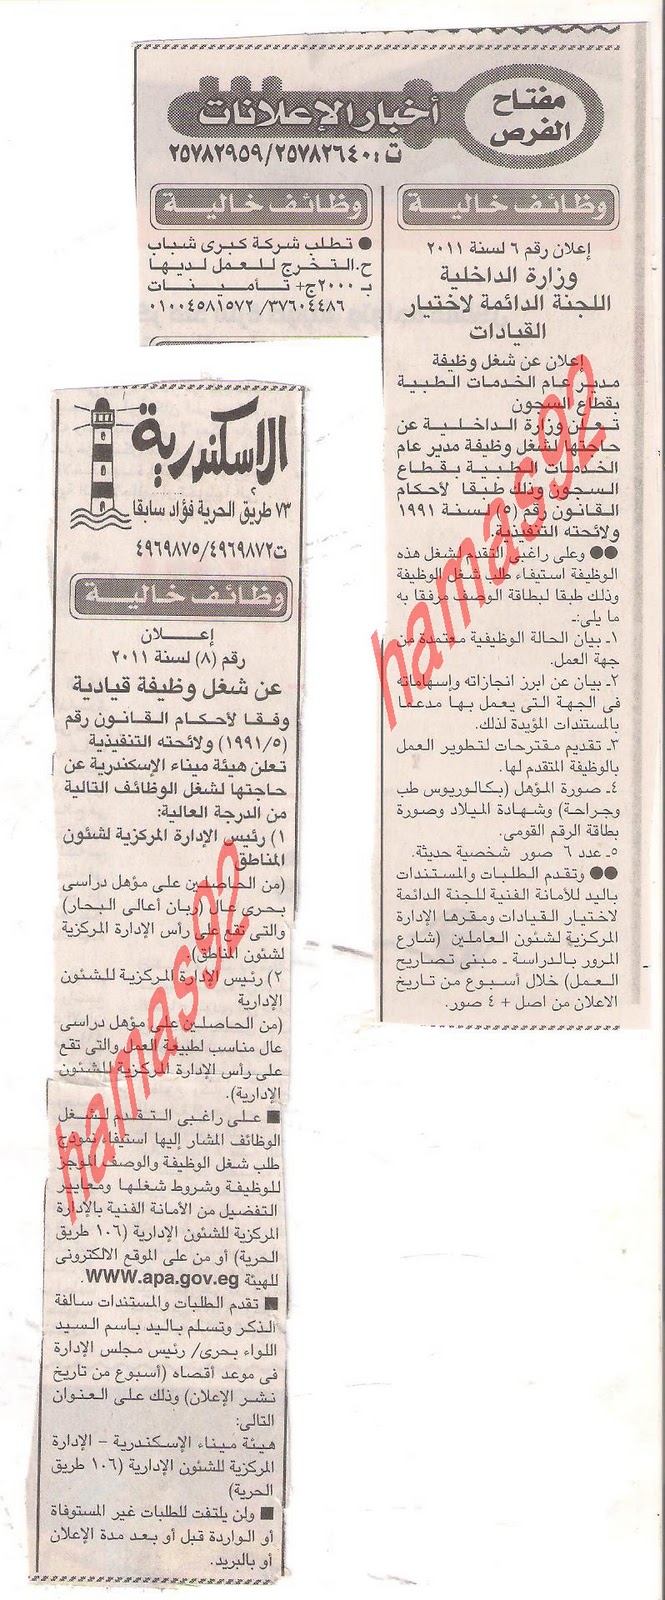 وظائف خالية من جريدة الاخبار الخميس 29/12/2011 Picture+003